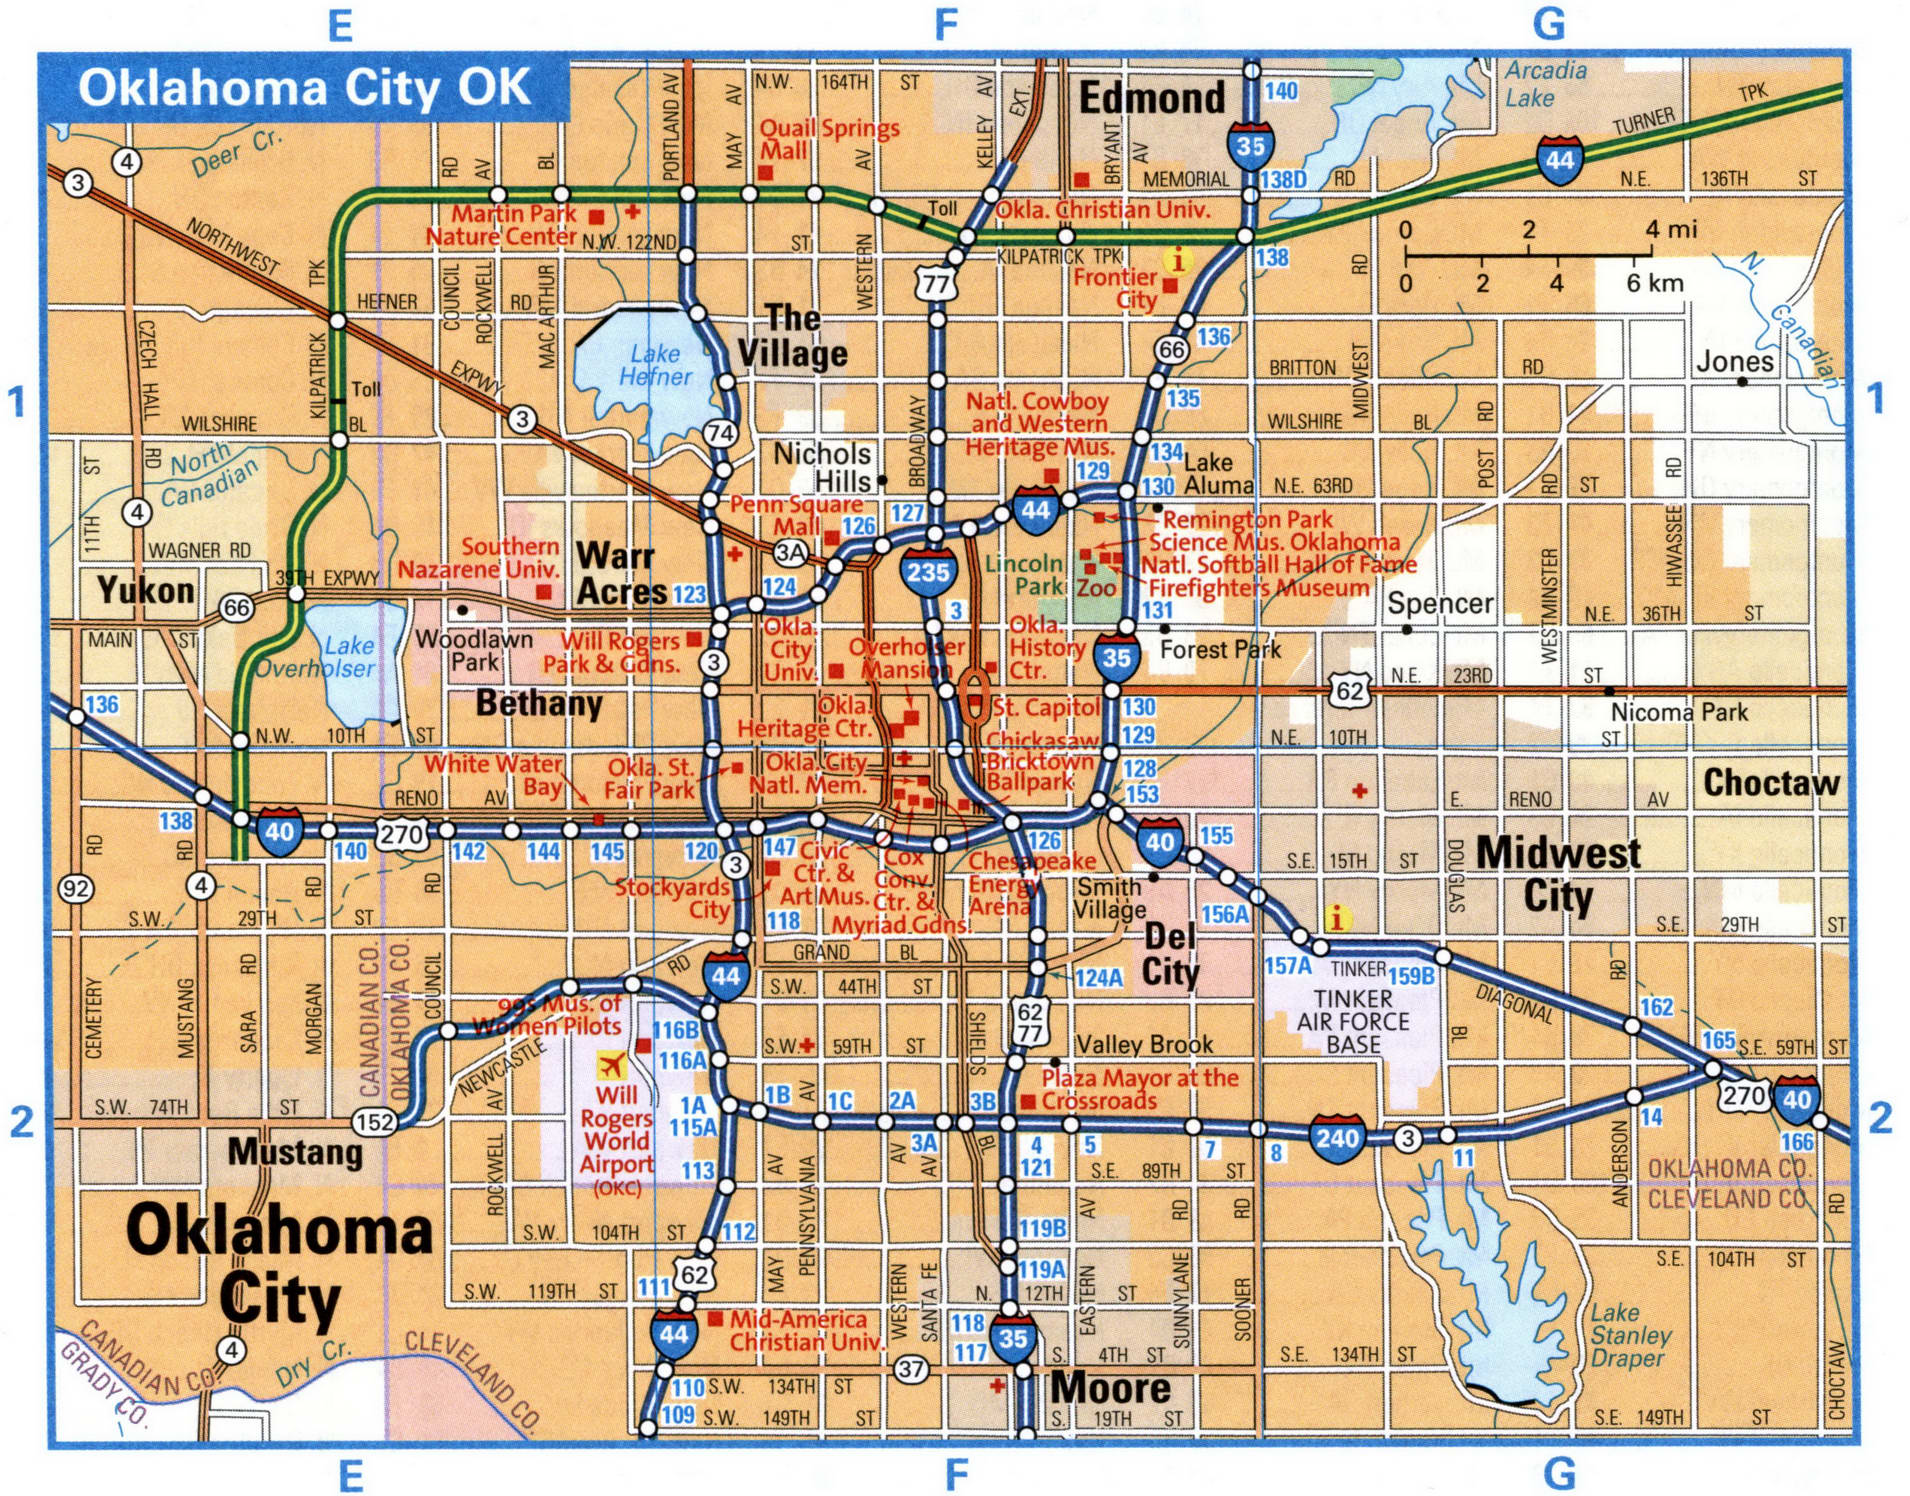 Oklahoma City interstate highway map road free toll I35, I40, I44, I235 ...